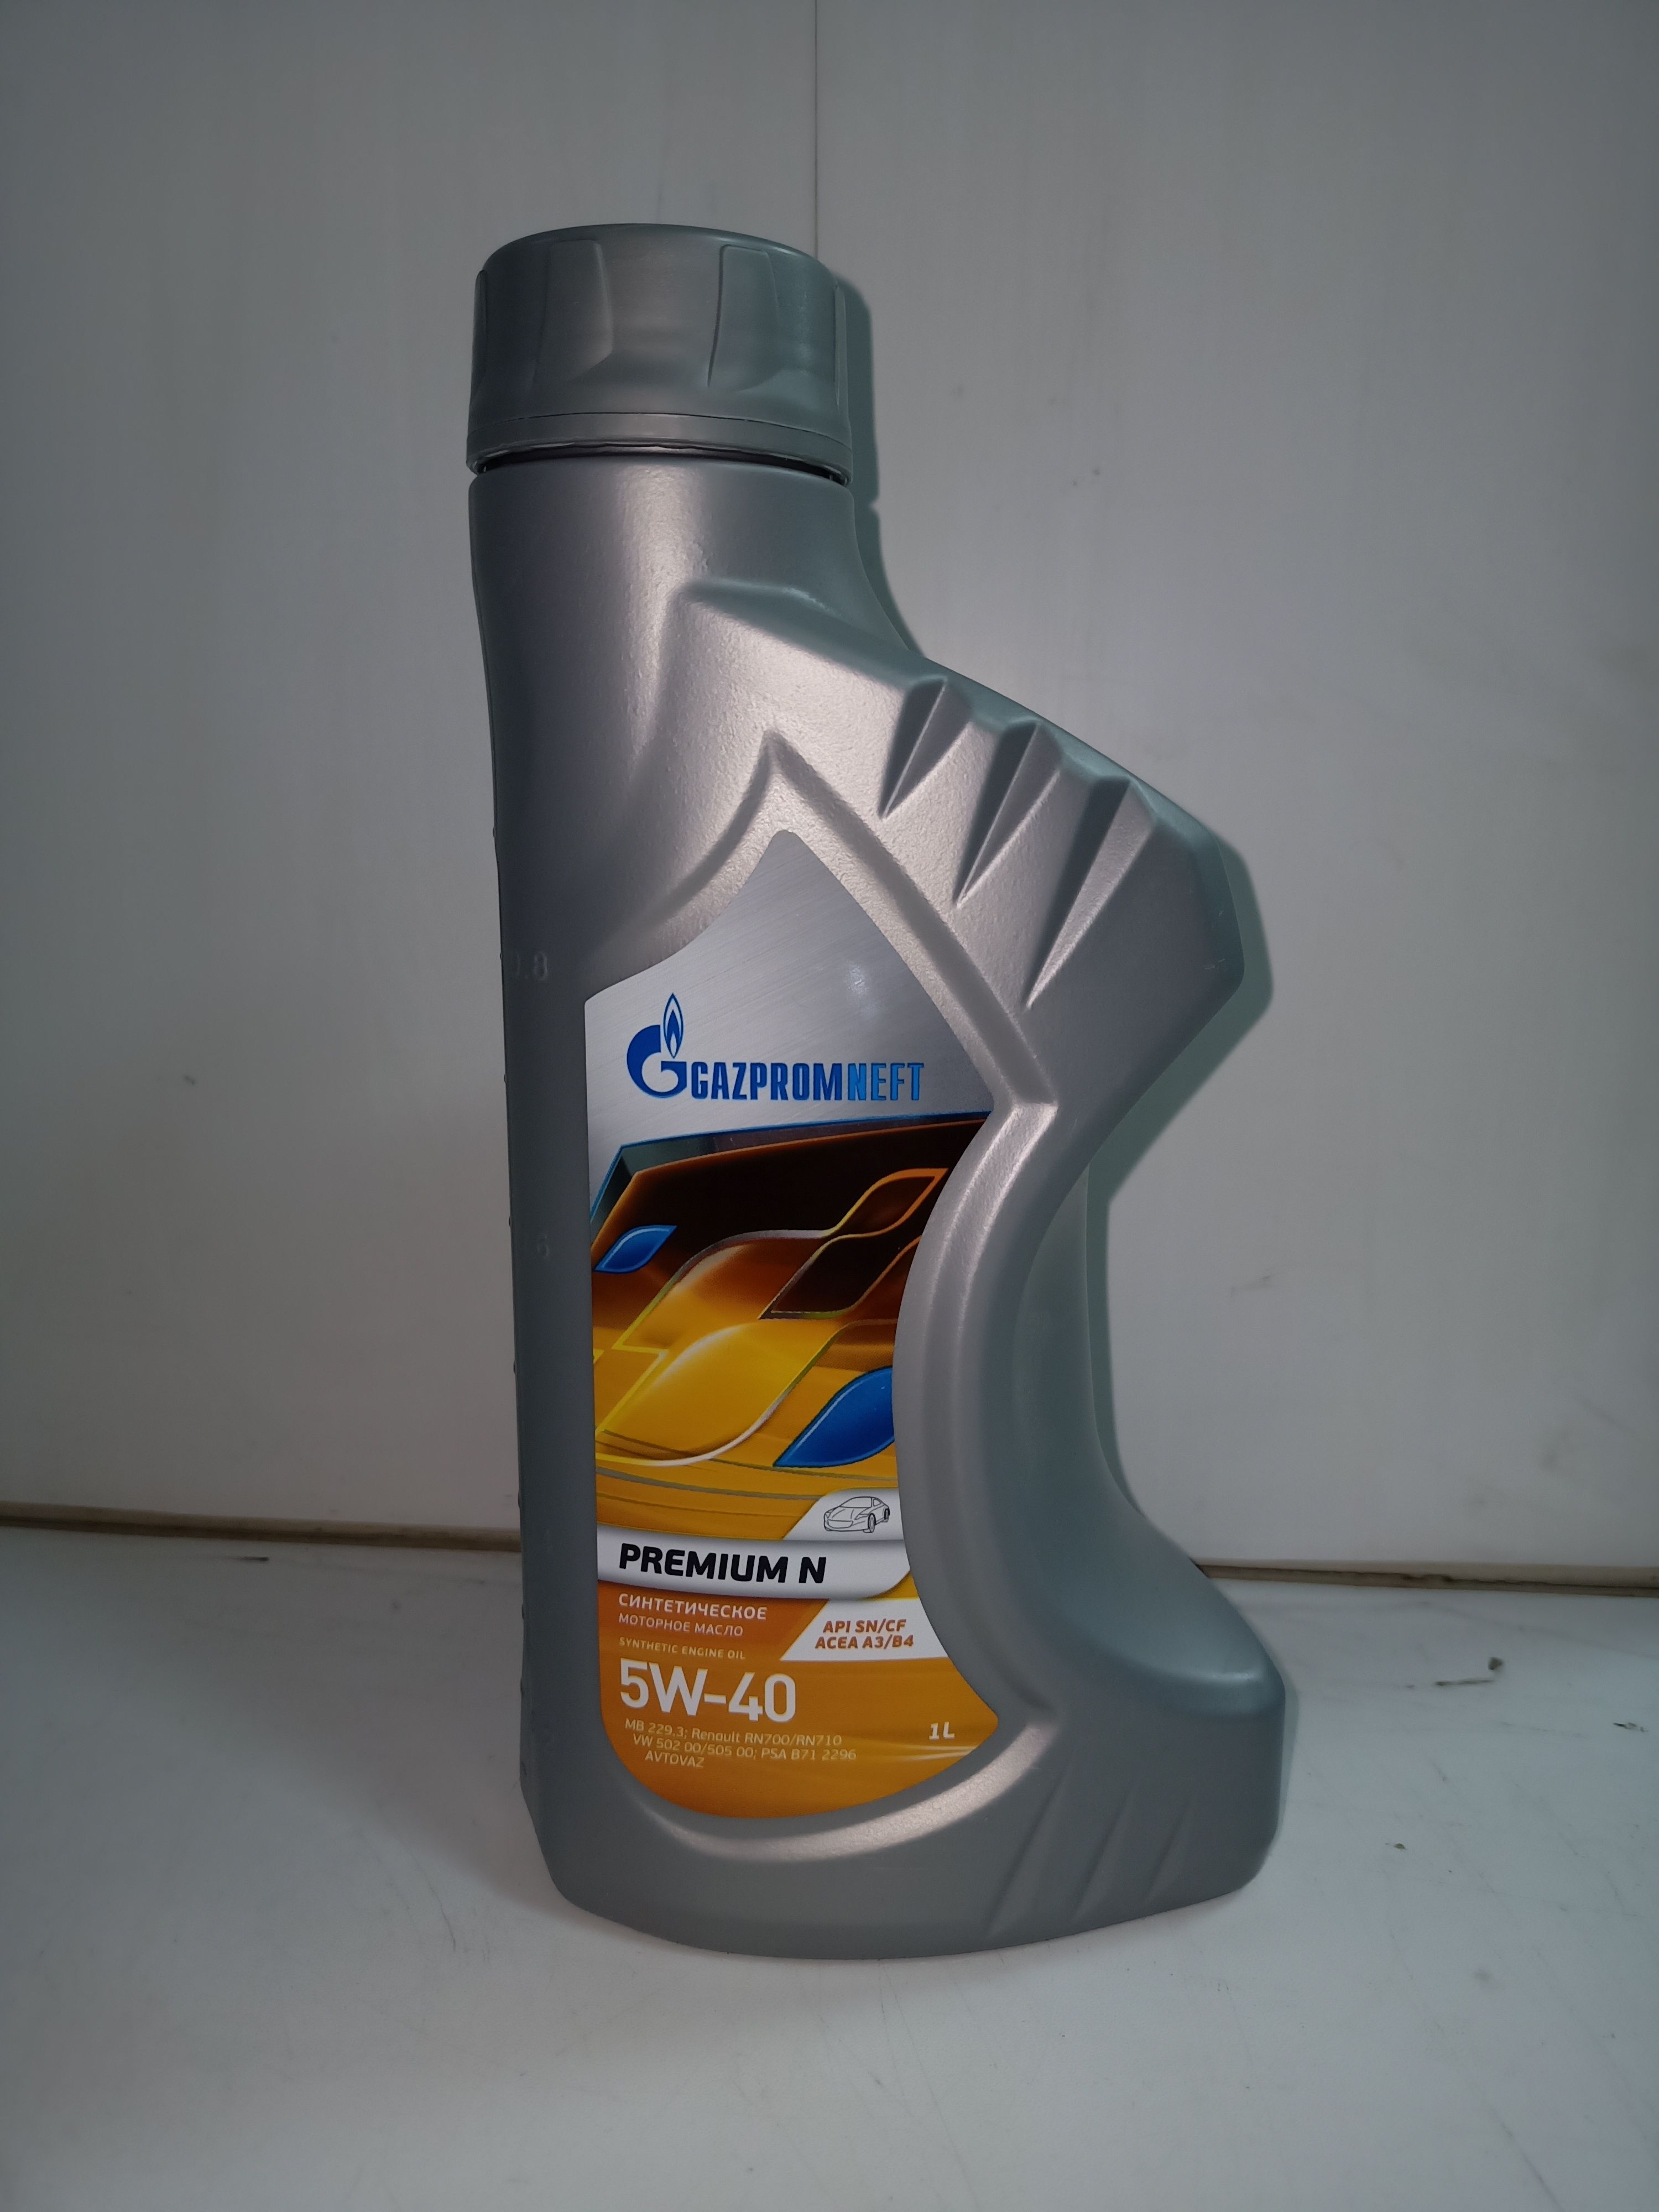 Масло газпромнефть 5w40 полусинтетика. Масло Газпромнефть 5w40 синтетика. Gazpromneft Premium n 5w-40.